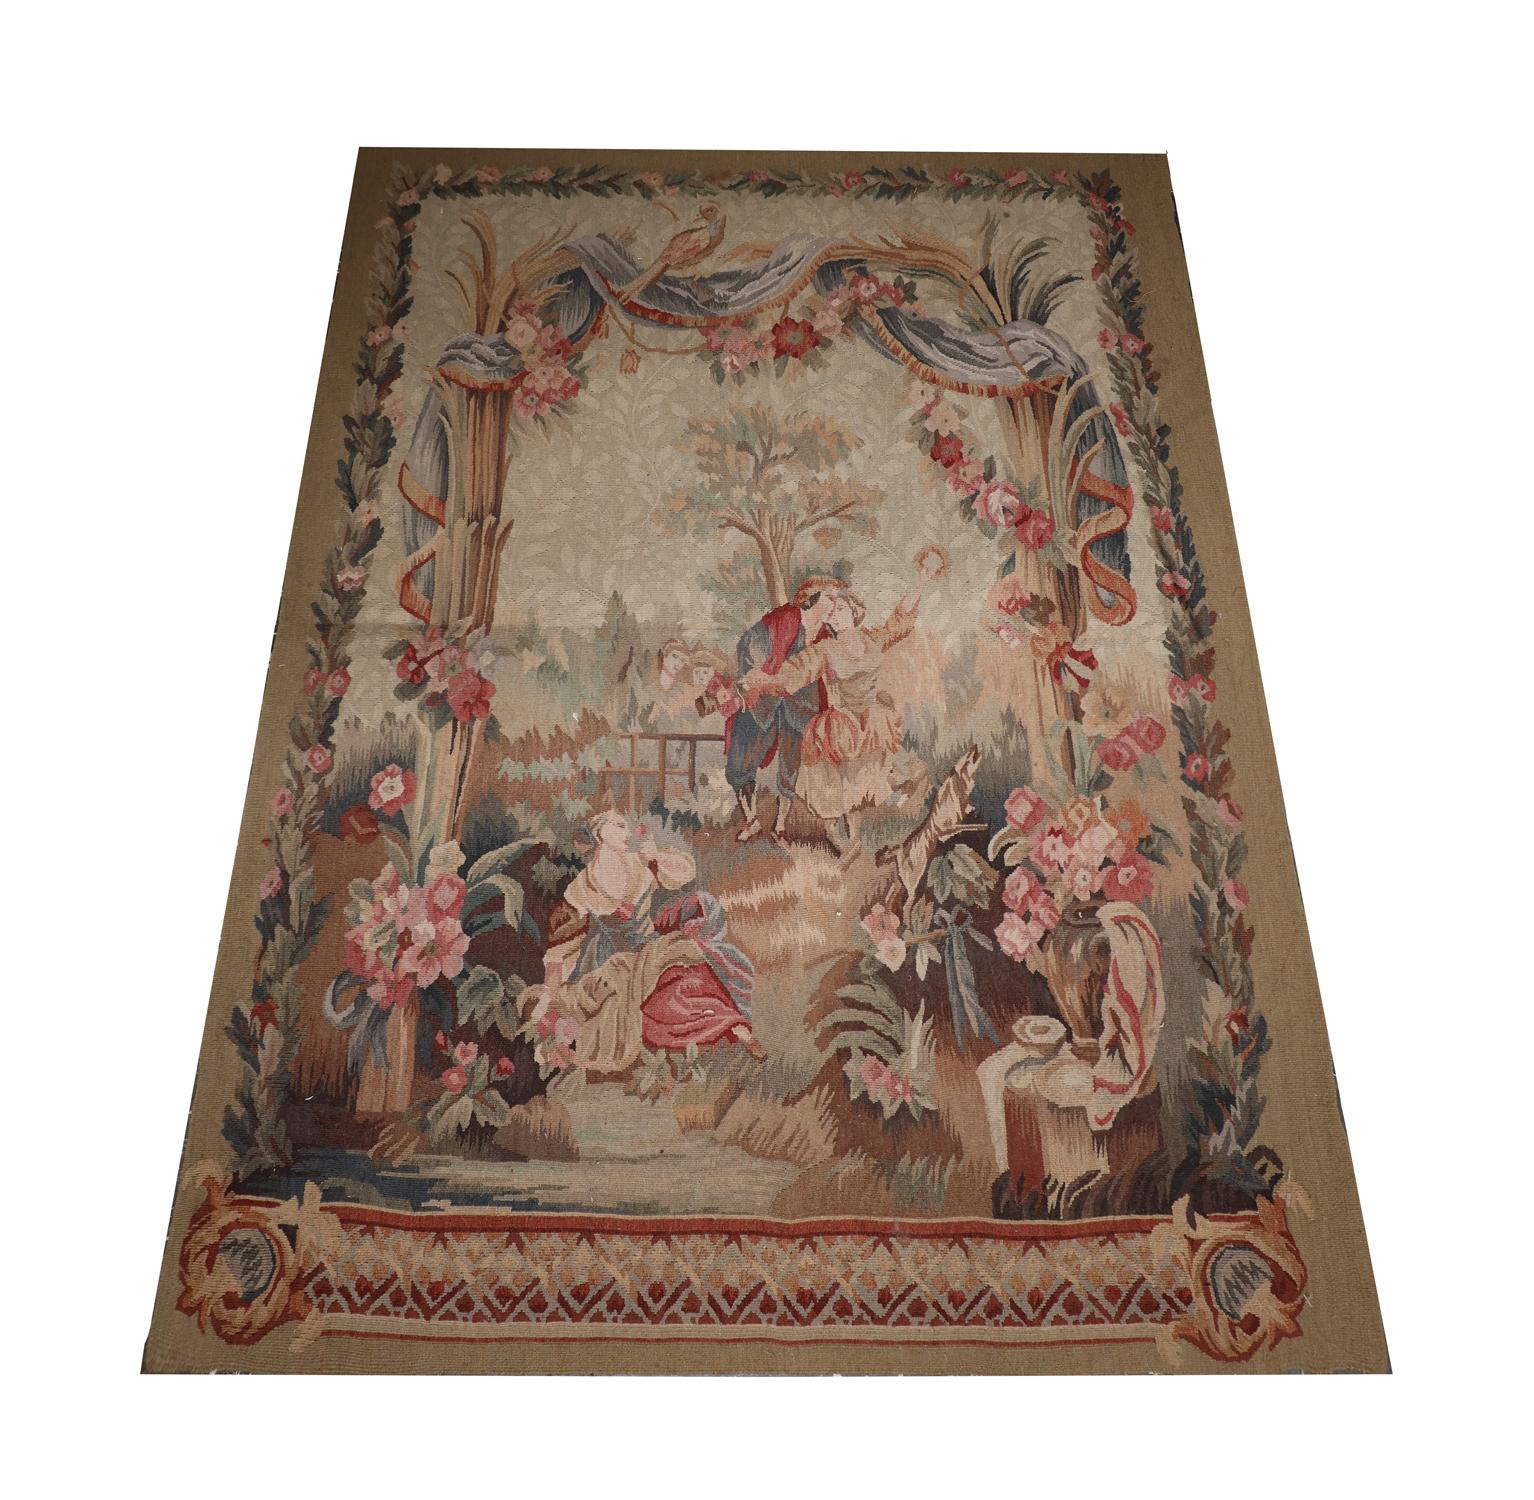 Cette tapisserie est un textile de style français tissé de manière complexe pour créer une scène forestière réaliste mettant en scène un trio de personnes, des fleurs, des rideaux et un chien. Les couleurs et le design travaillent en harmonie,